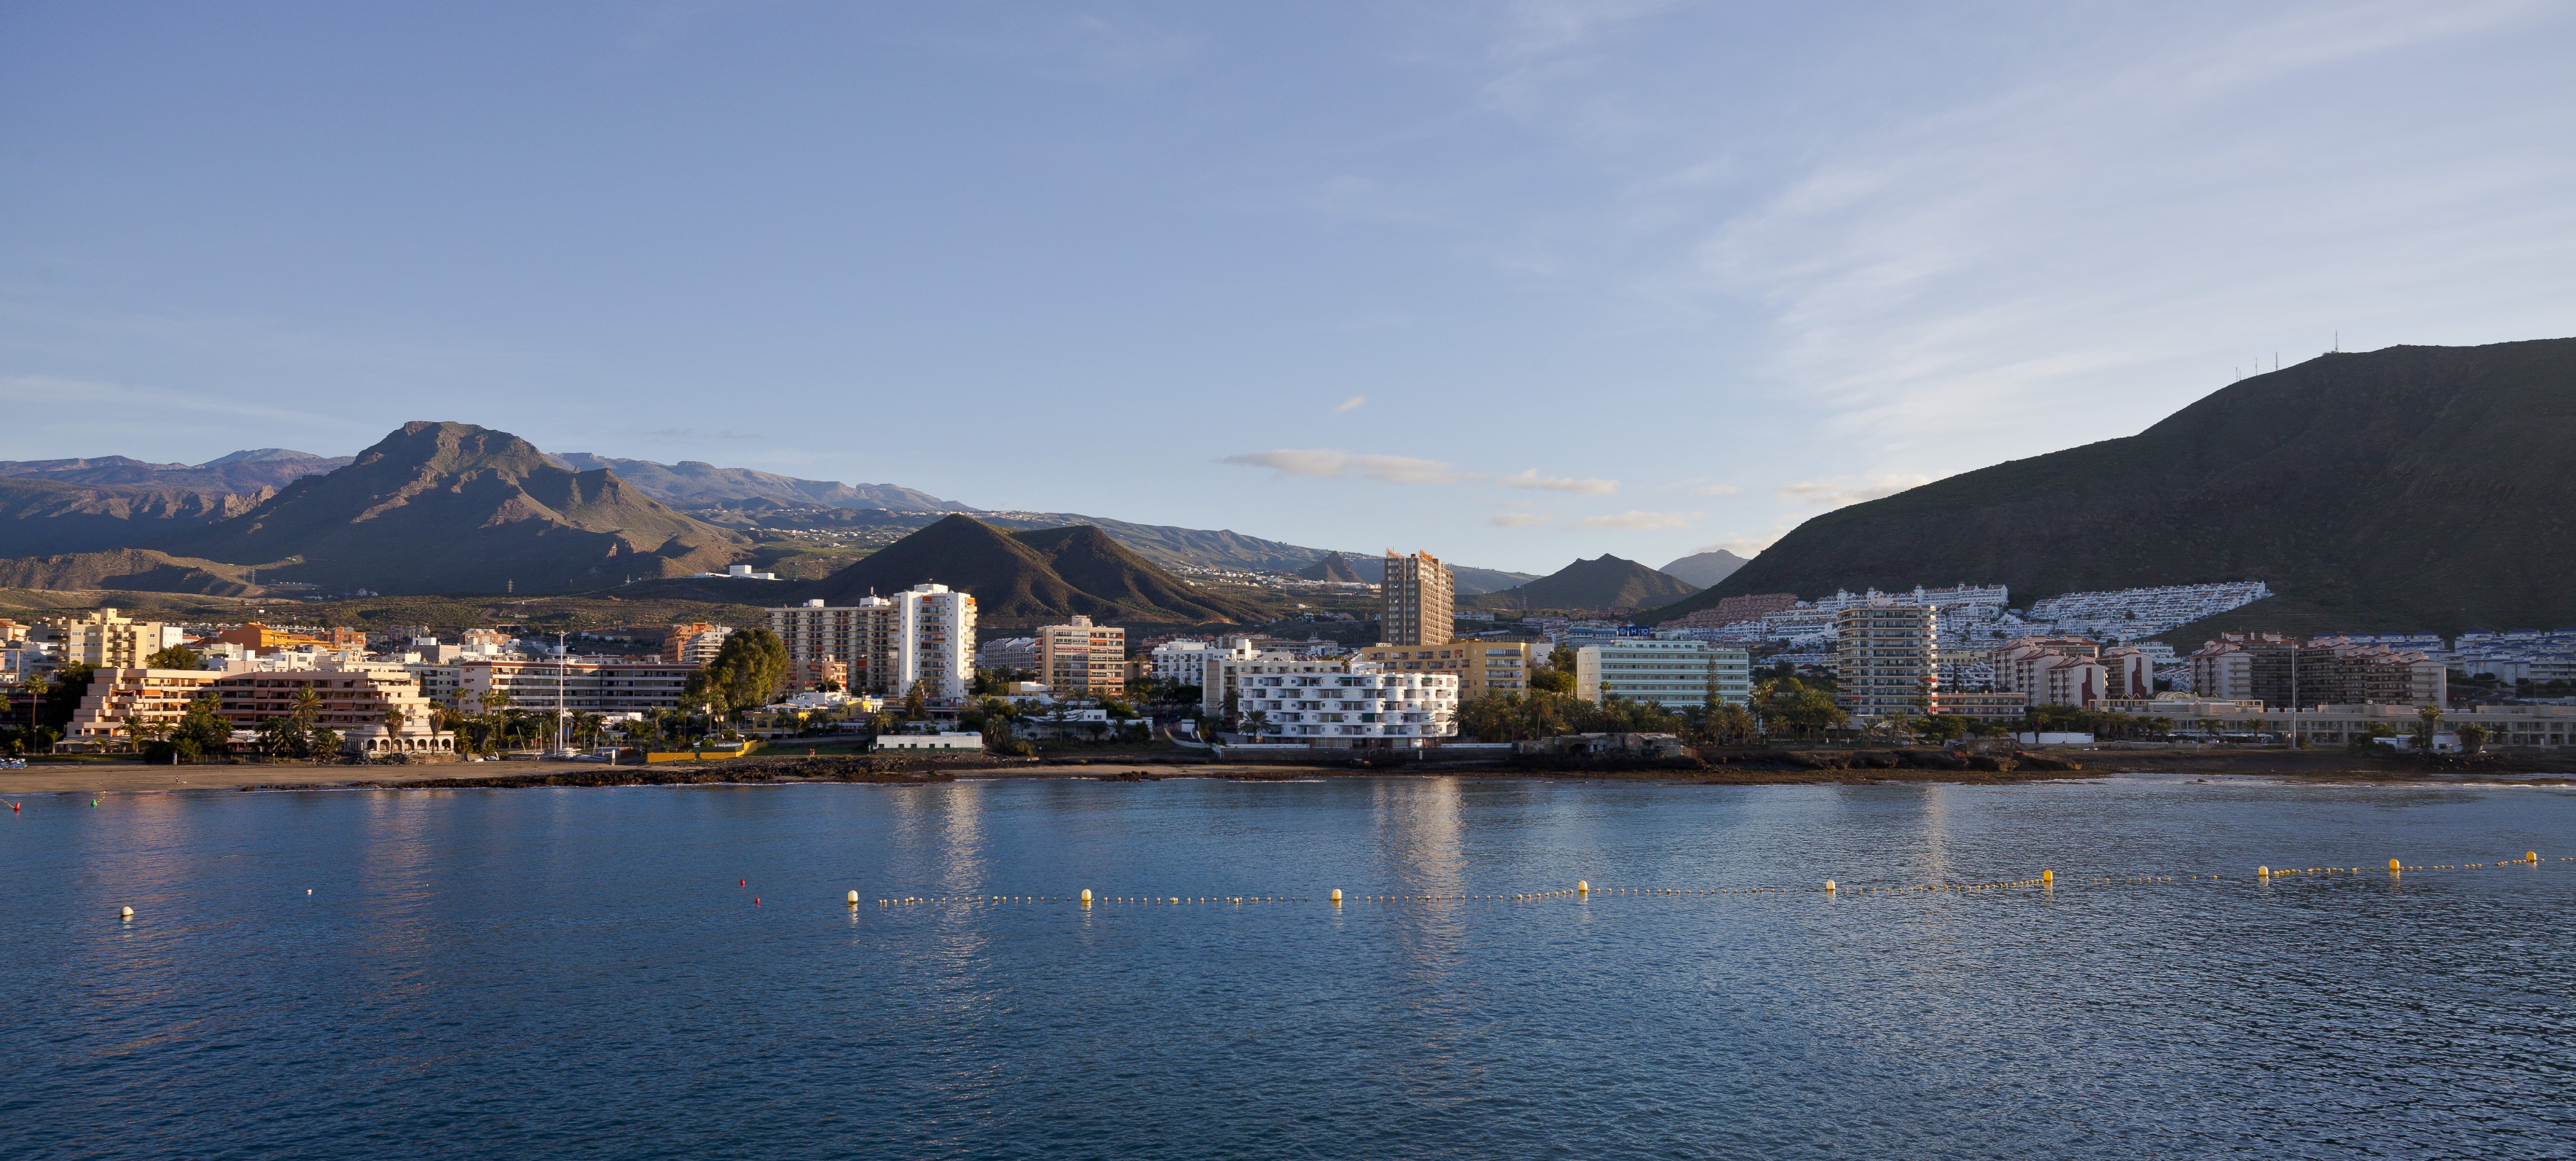 Puerto de Los Cristianos, Tenerife, España, 2012-12-14, DD 04